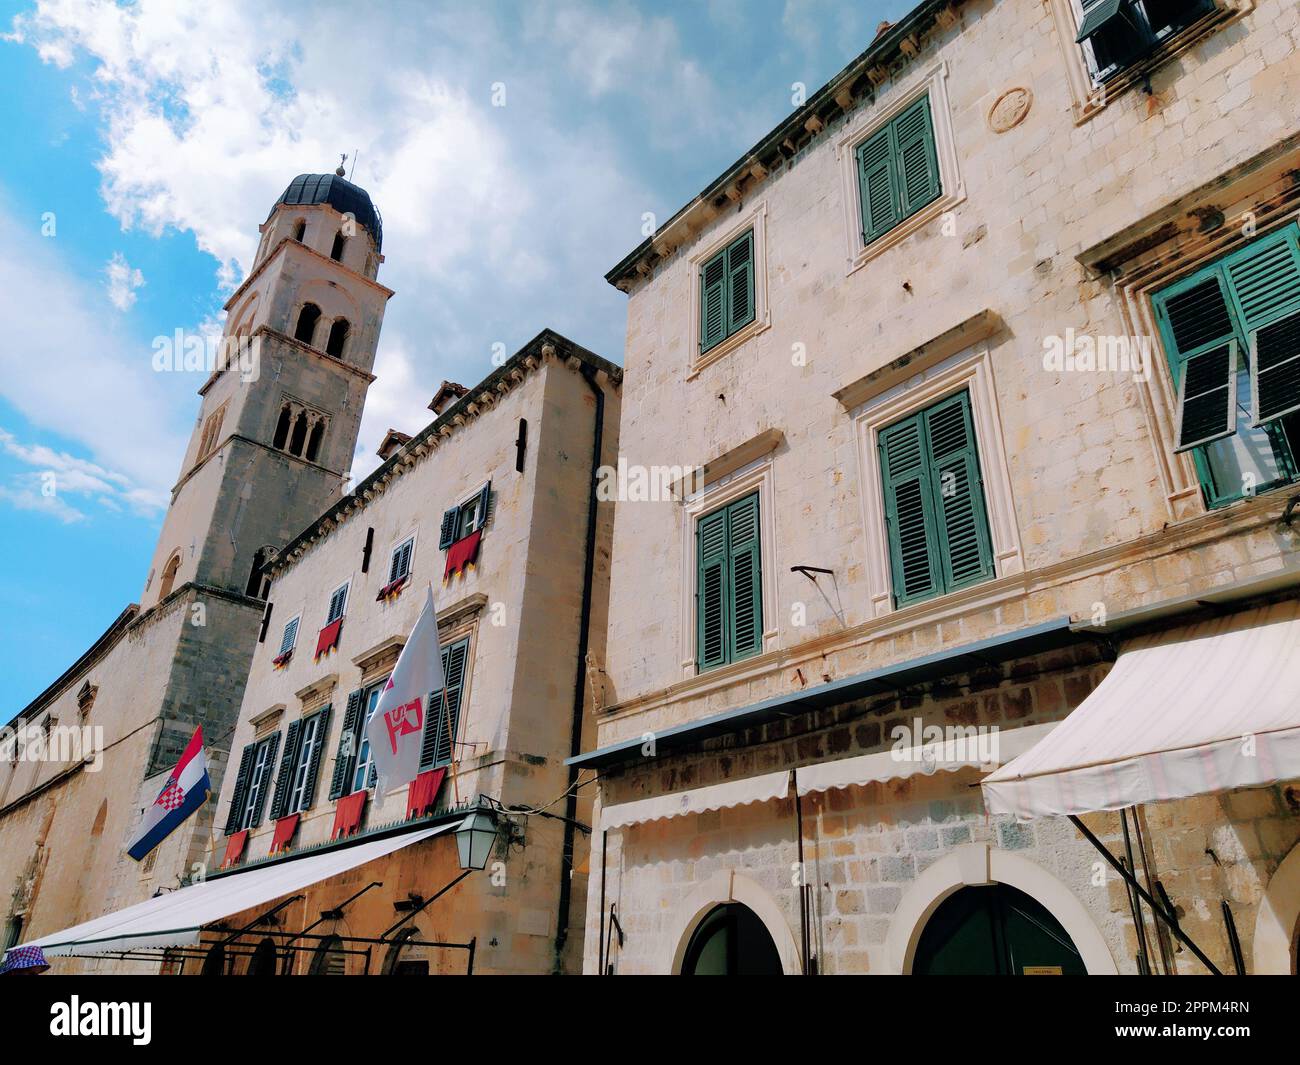 Stradun, Stradone ist die Hauptstraße des historischen Stadtzentrums von Dubrovnik in Kroatien. Architektonische Sehenswürdigkeiten. Ein beliebter Ort für touristische Spaziergänge. 14. August 2022 Turm und Fassaden von alten Häusern. Stockfoto